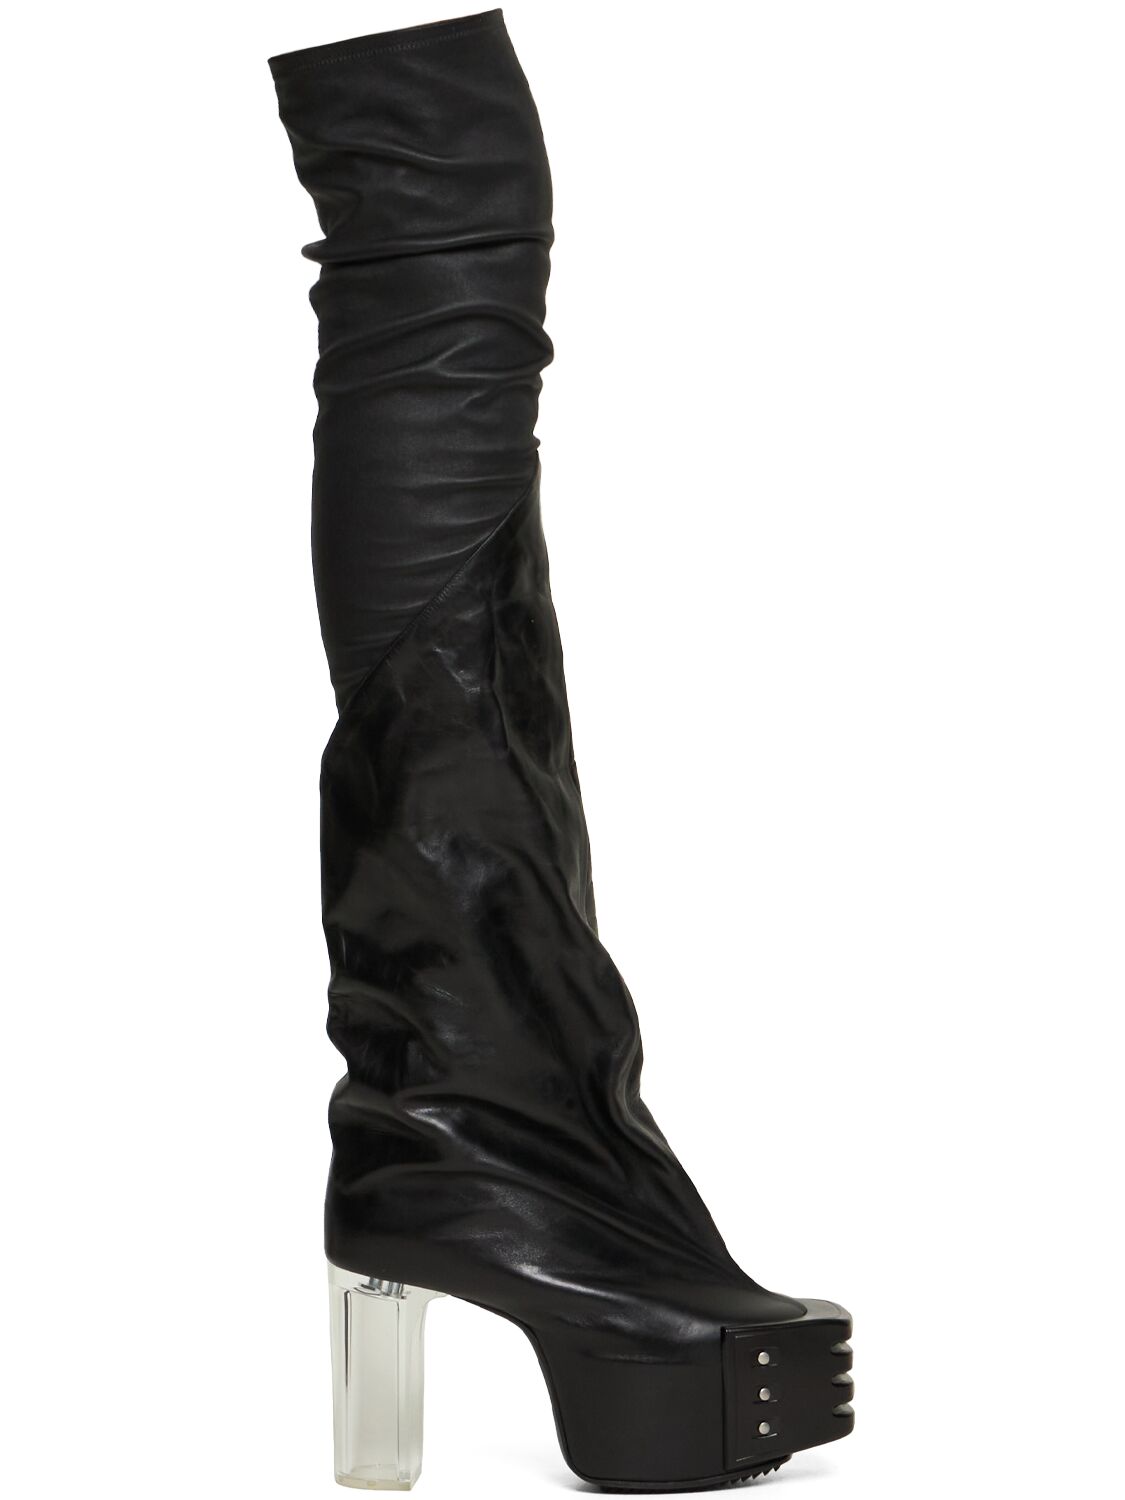 Beatle Bogun Leather Boots – MEN > SHOES > BOOTS